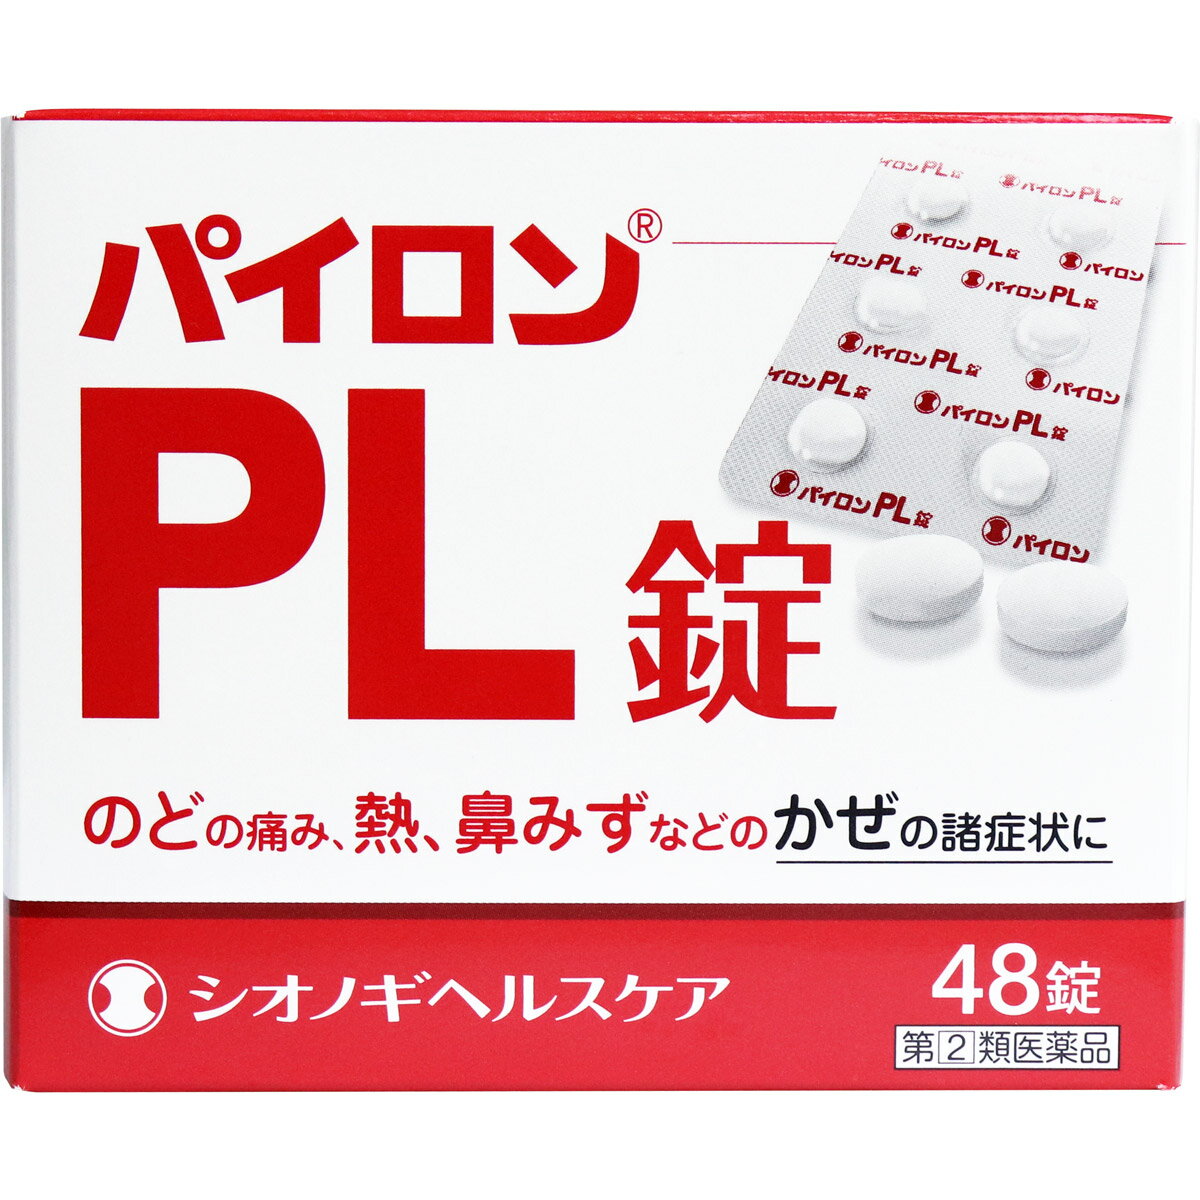 y(2)ވiz pCPL 48